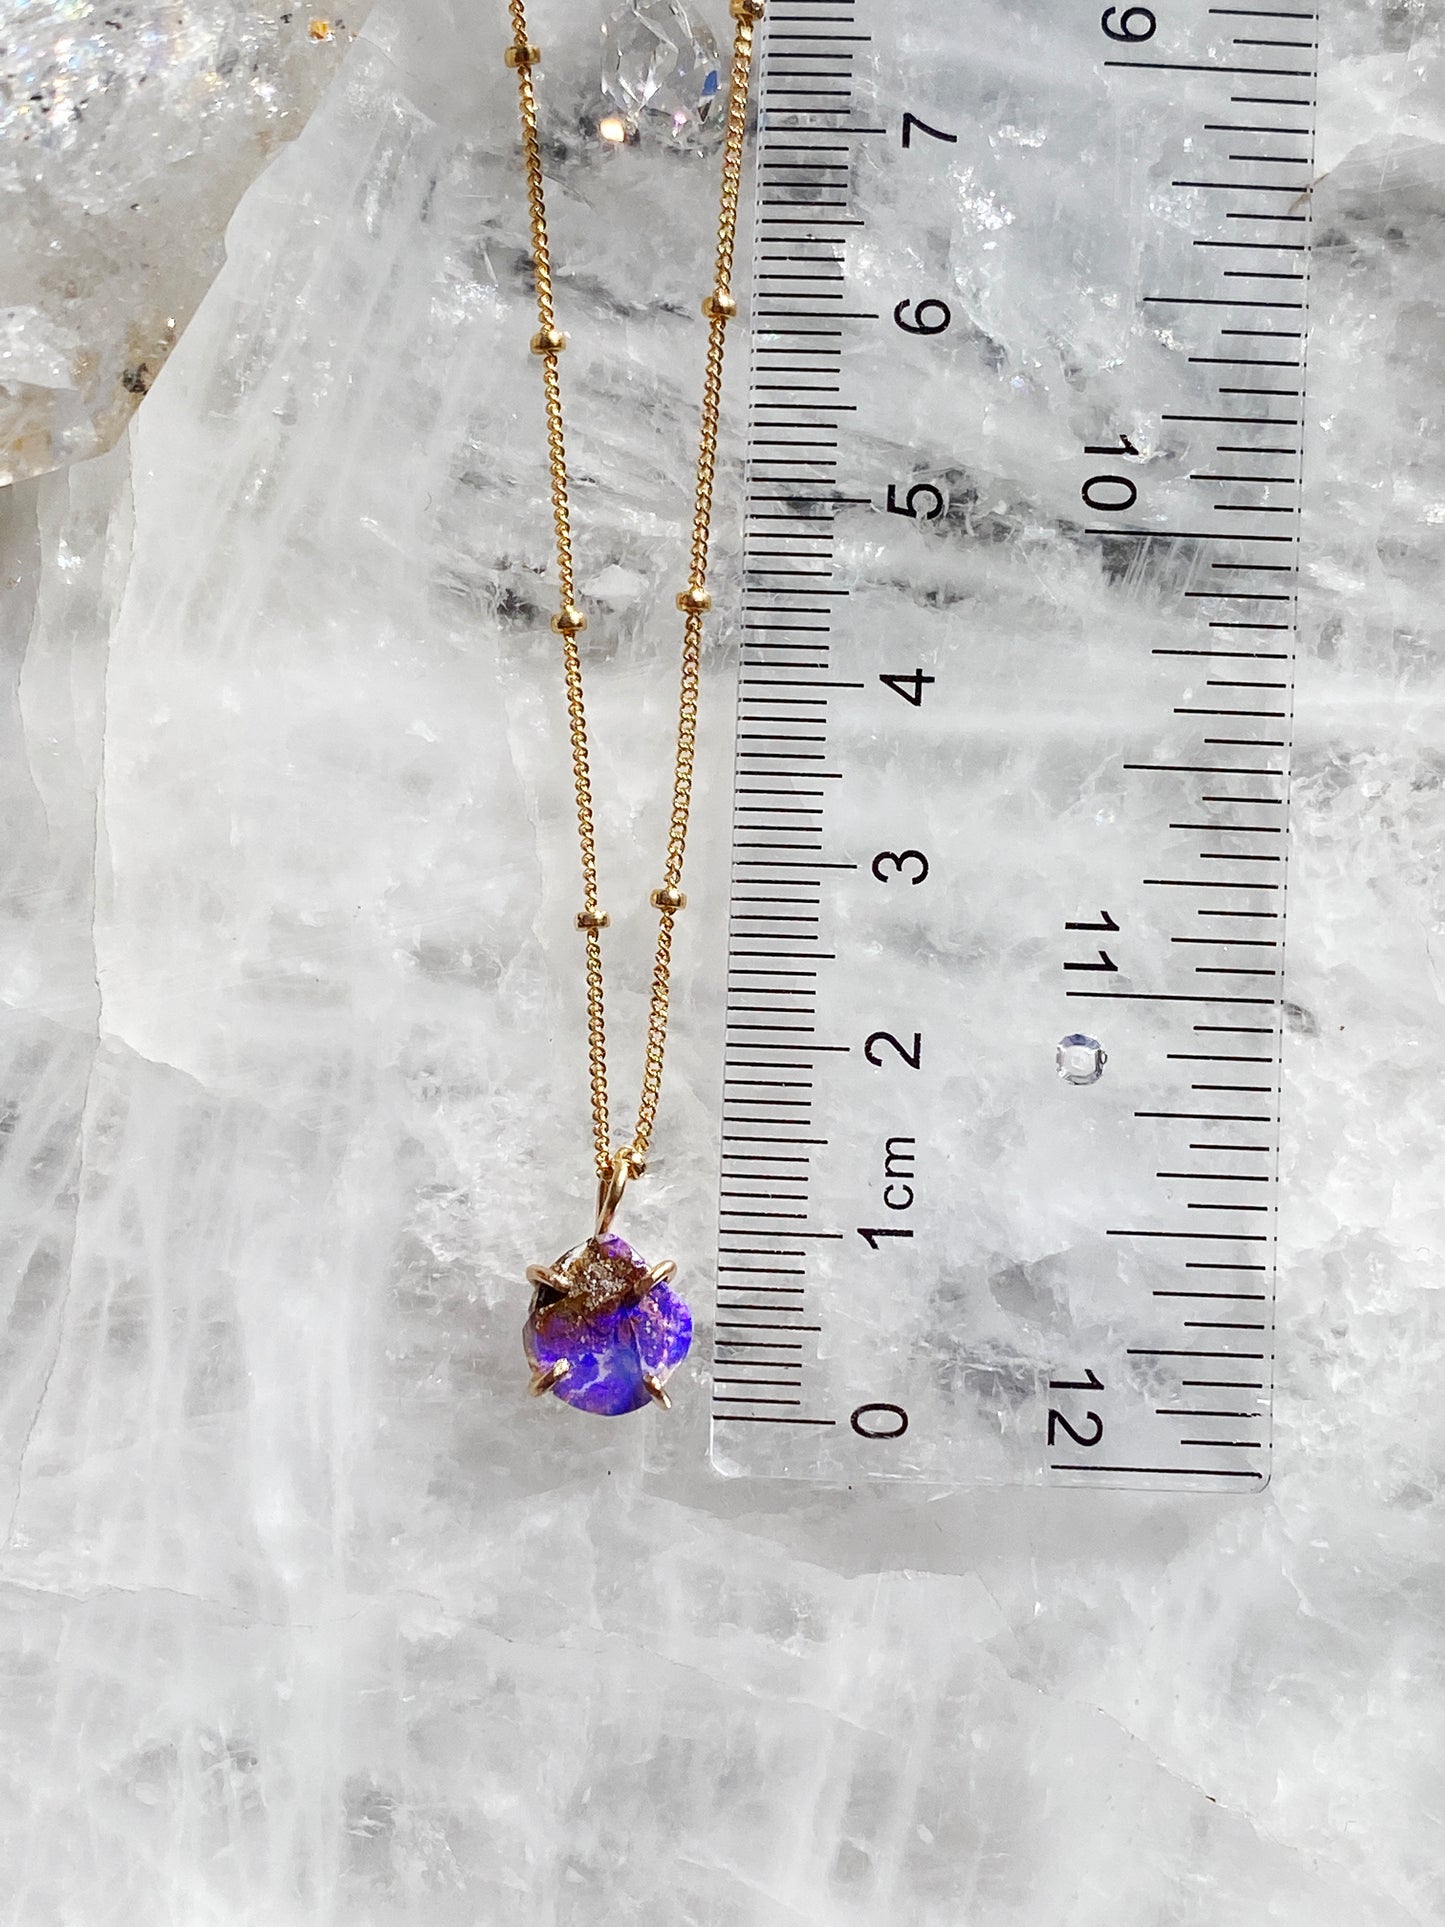 Purple Australian Opal Necklace